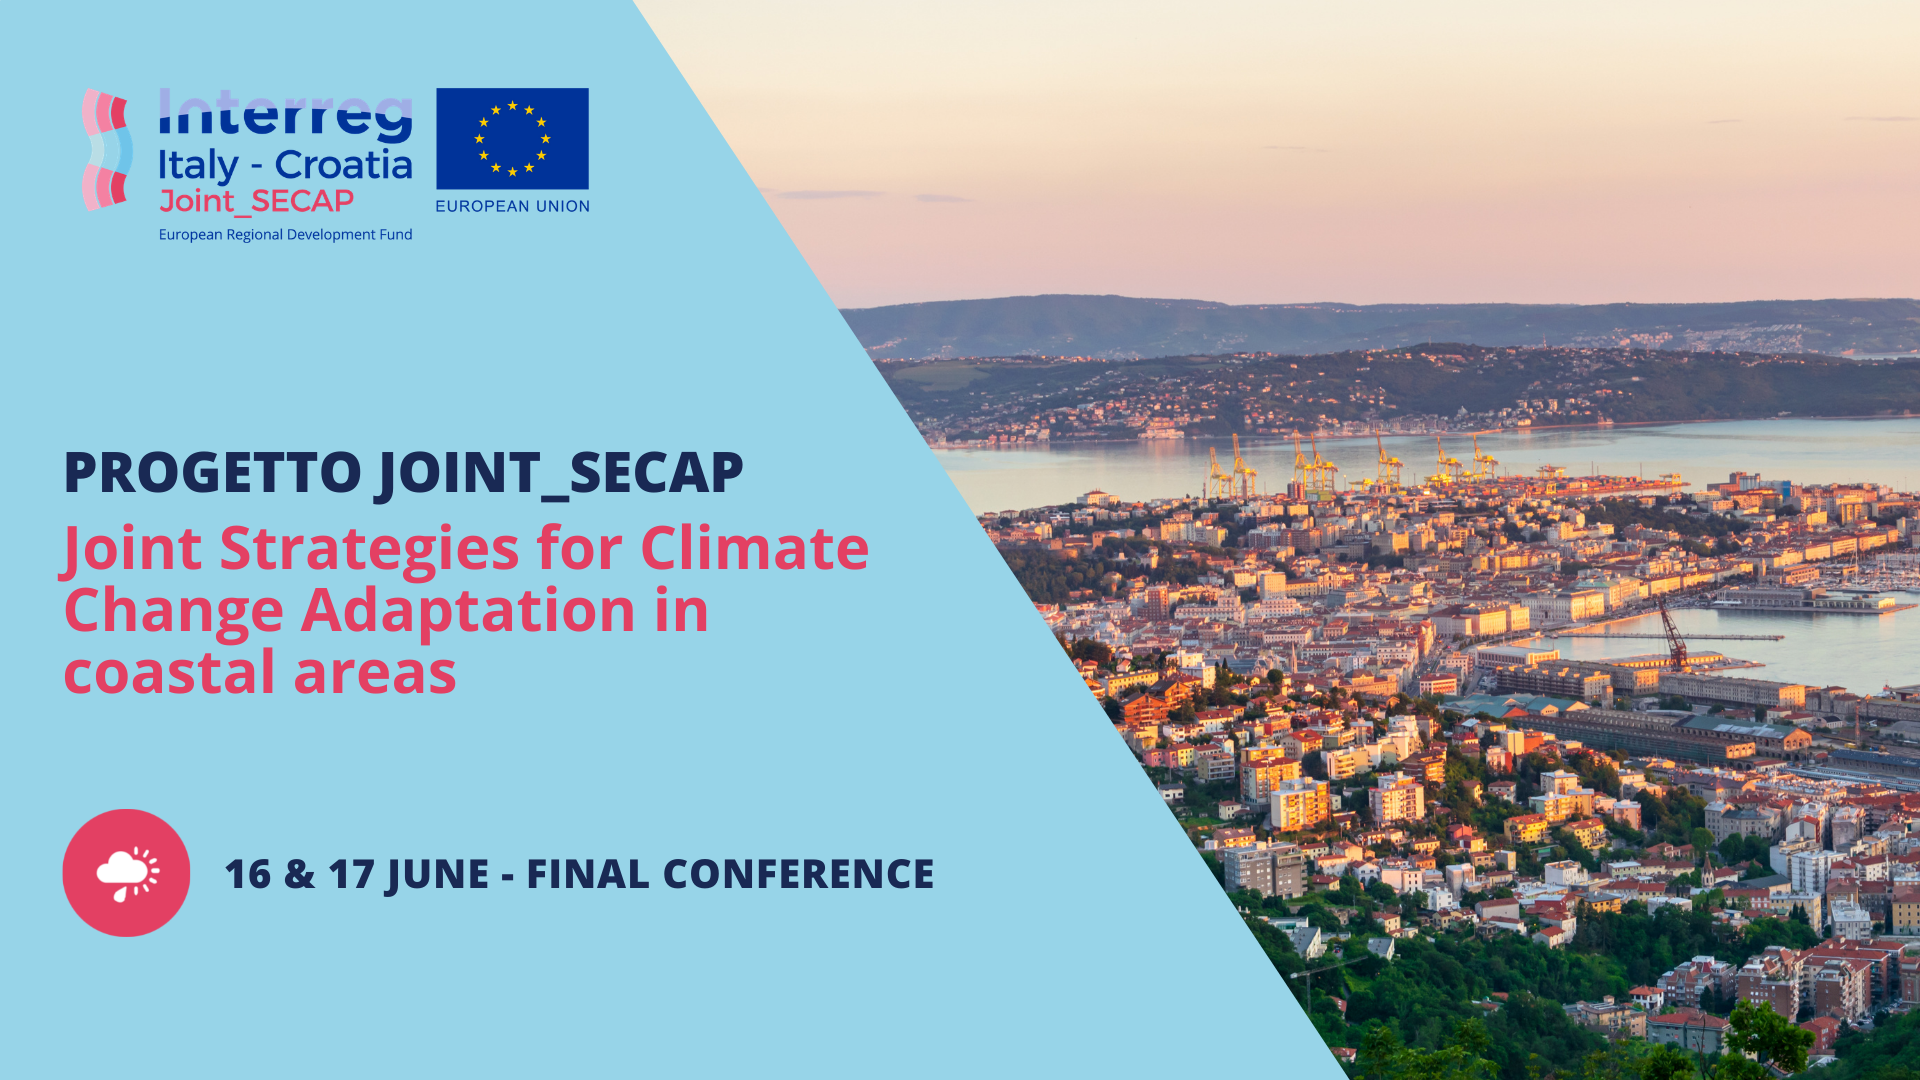 Conferenza finale  Joint SECAP (Interreg Italia - Croazia) - 16/17 giugno 2021